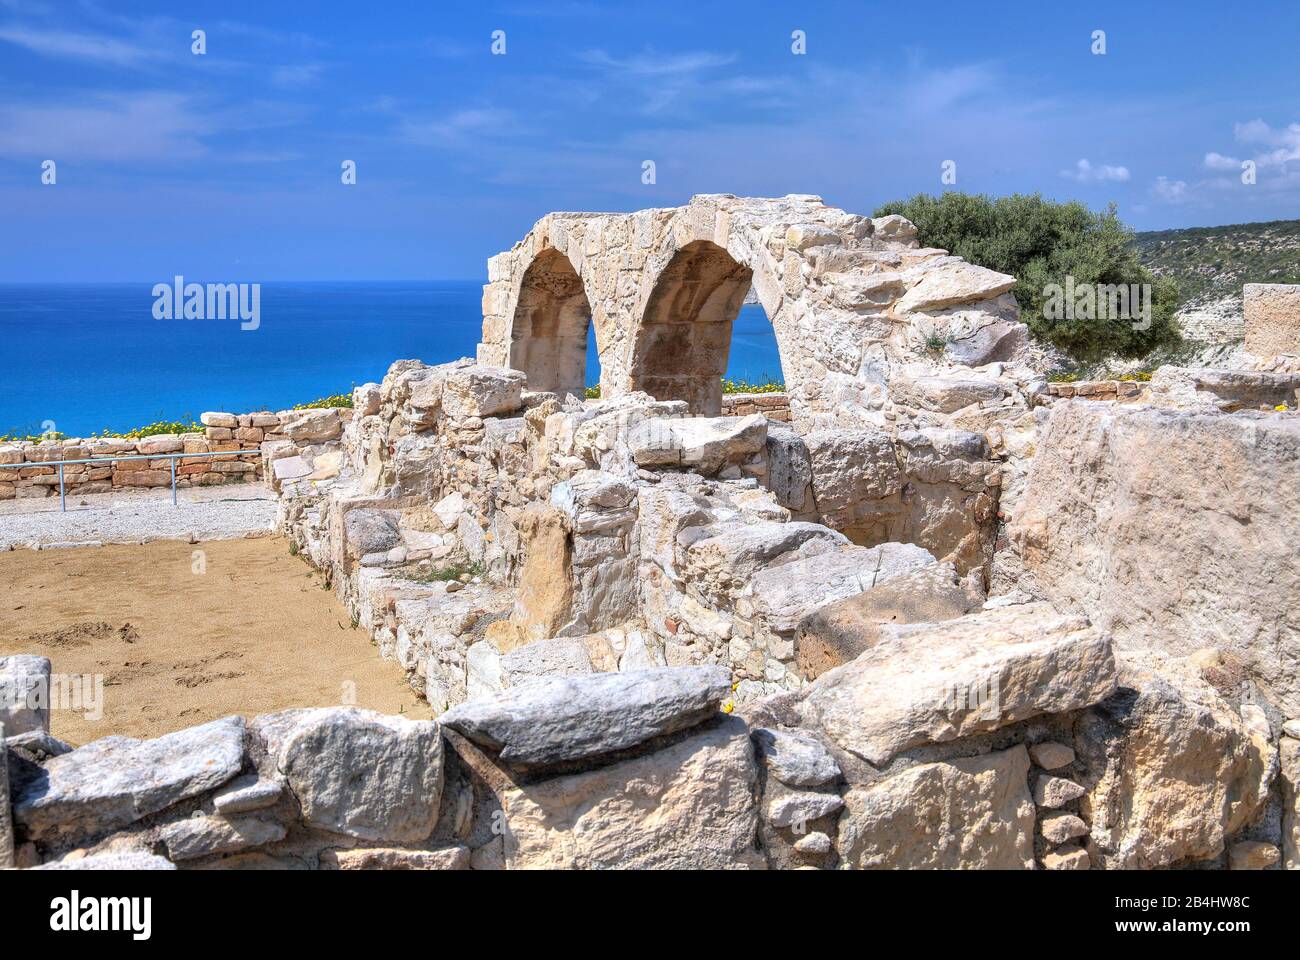 Basilica paleocristiana sopra la scogliera nell'antico sito archeologico di Kourion vicino a Limassol, costa mediterranea, Cipro Foto Stock